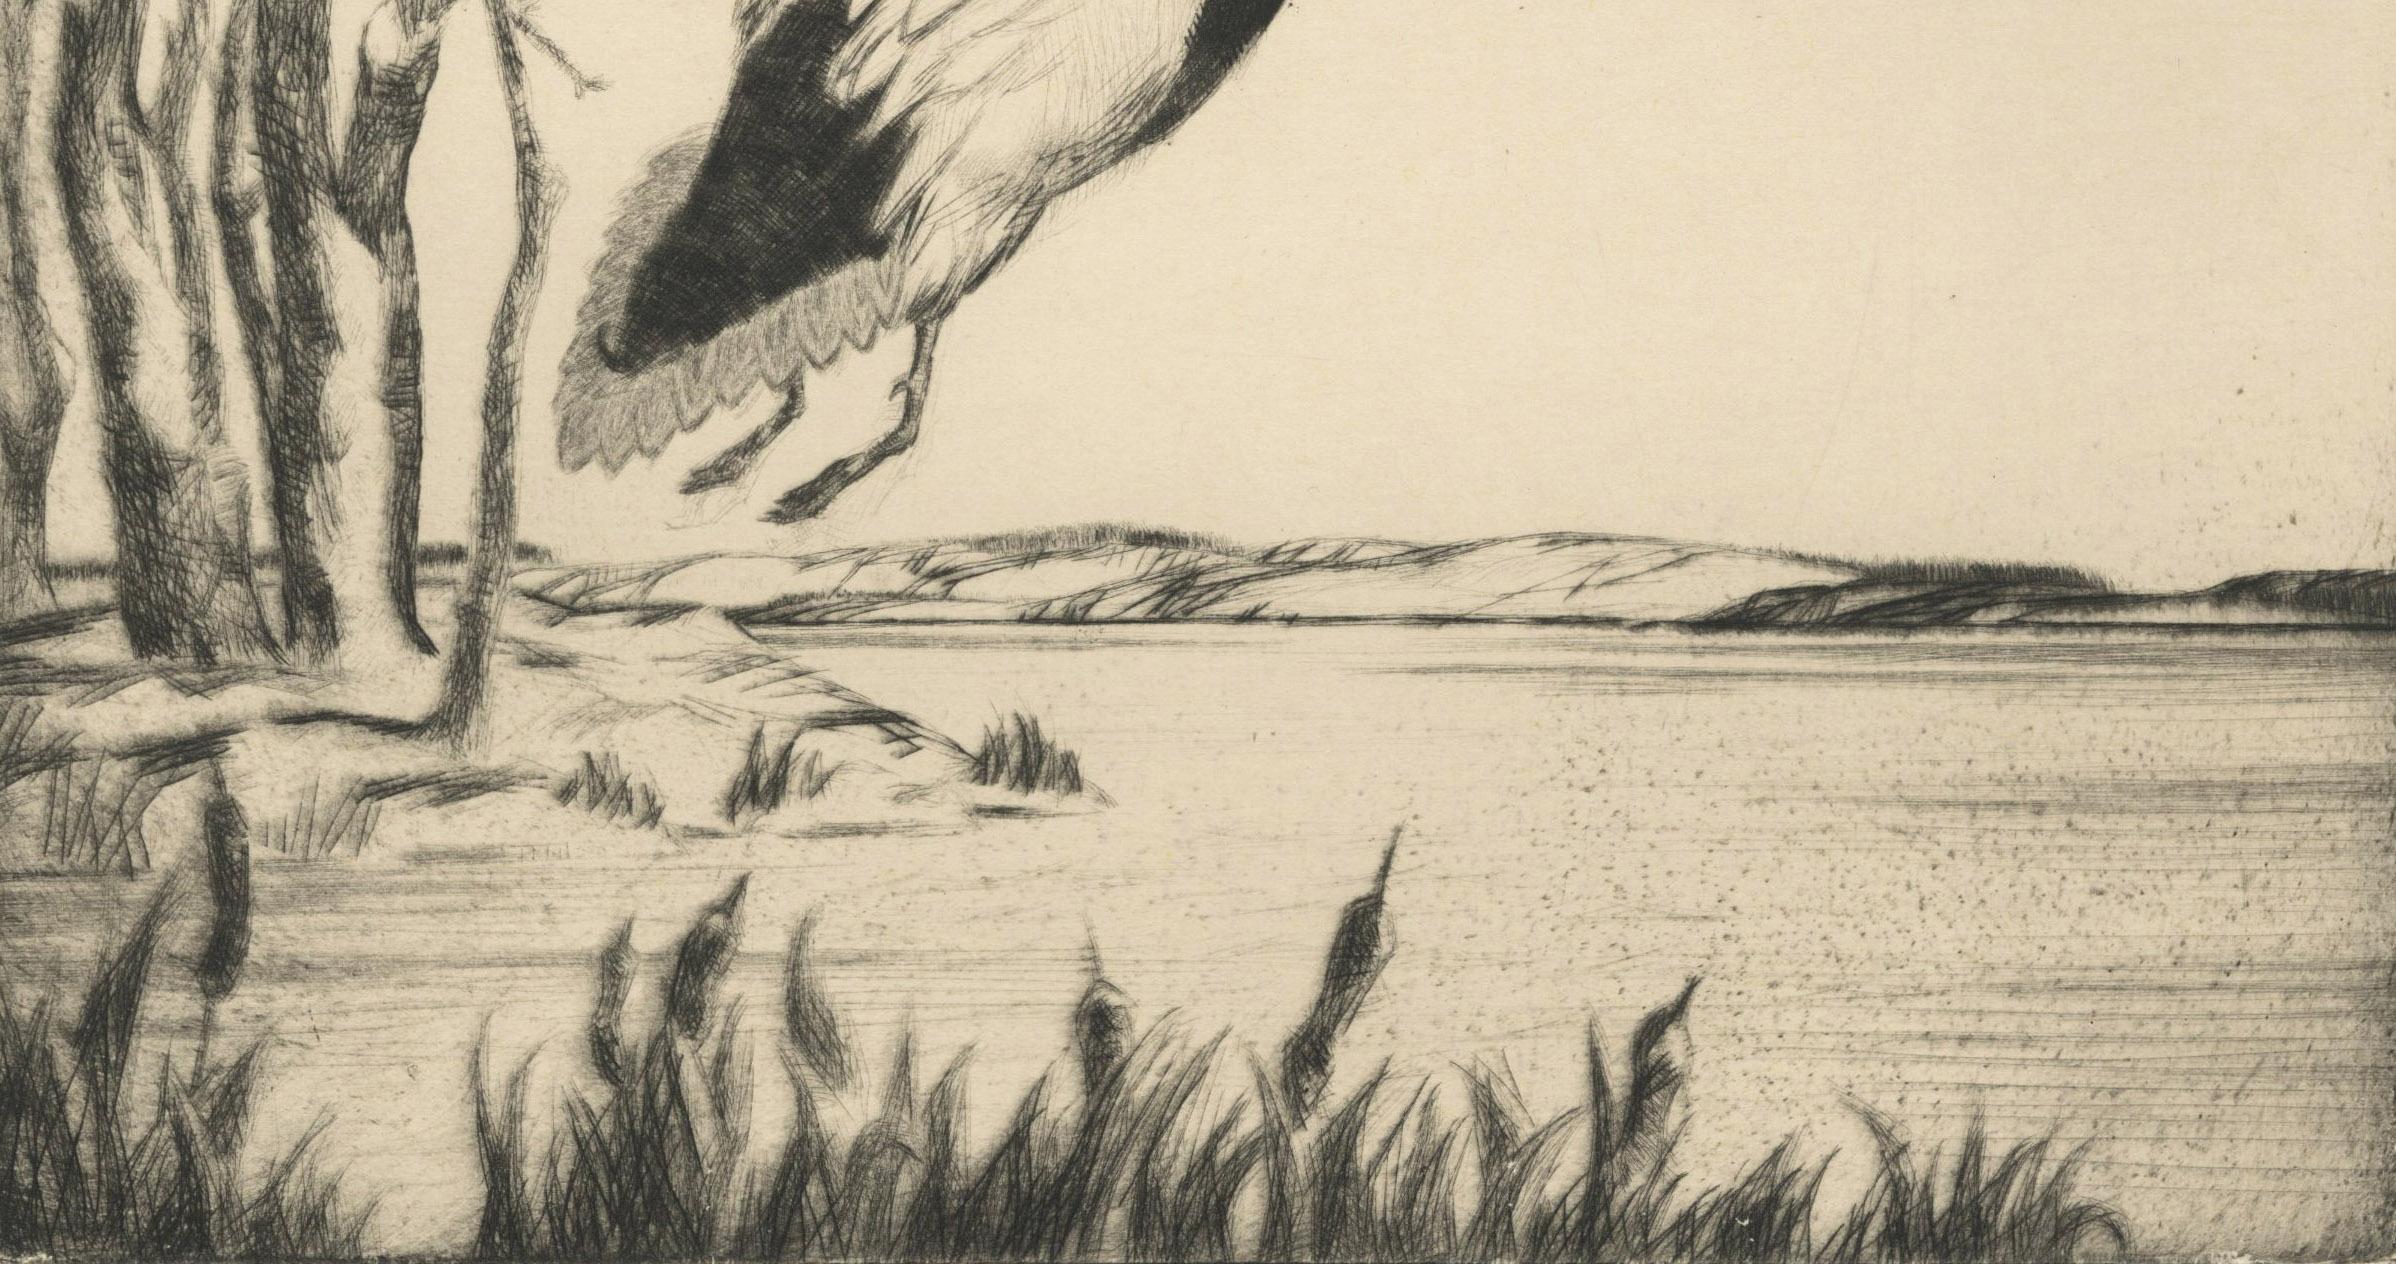 Ohne Titel (Drei Enten auf dem Weg zum Flug)
Kaltnadel, um 1940
Signiert unten rechts
Provenienz: Nachlass des Künstlers
                      Winchell Erben durch Abstammung
Zustand: Ausgezeichnet
Bild-/Plattengröße: 10 1/2 x 8 1/4 Zoll
Blattgröße: